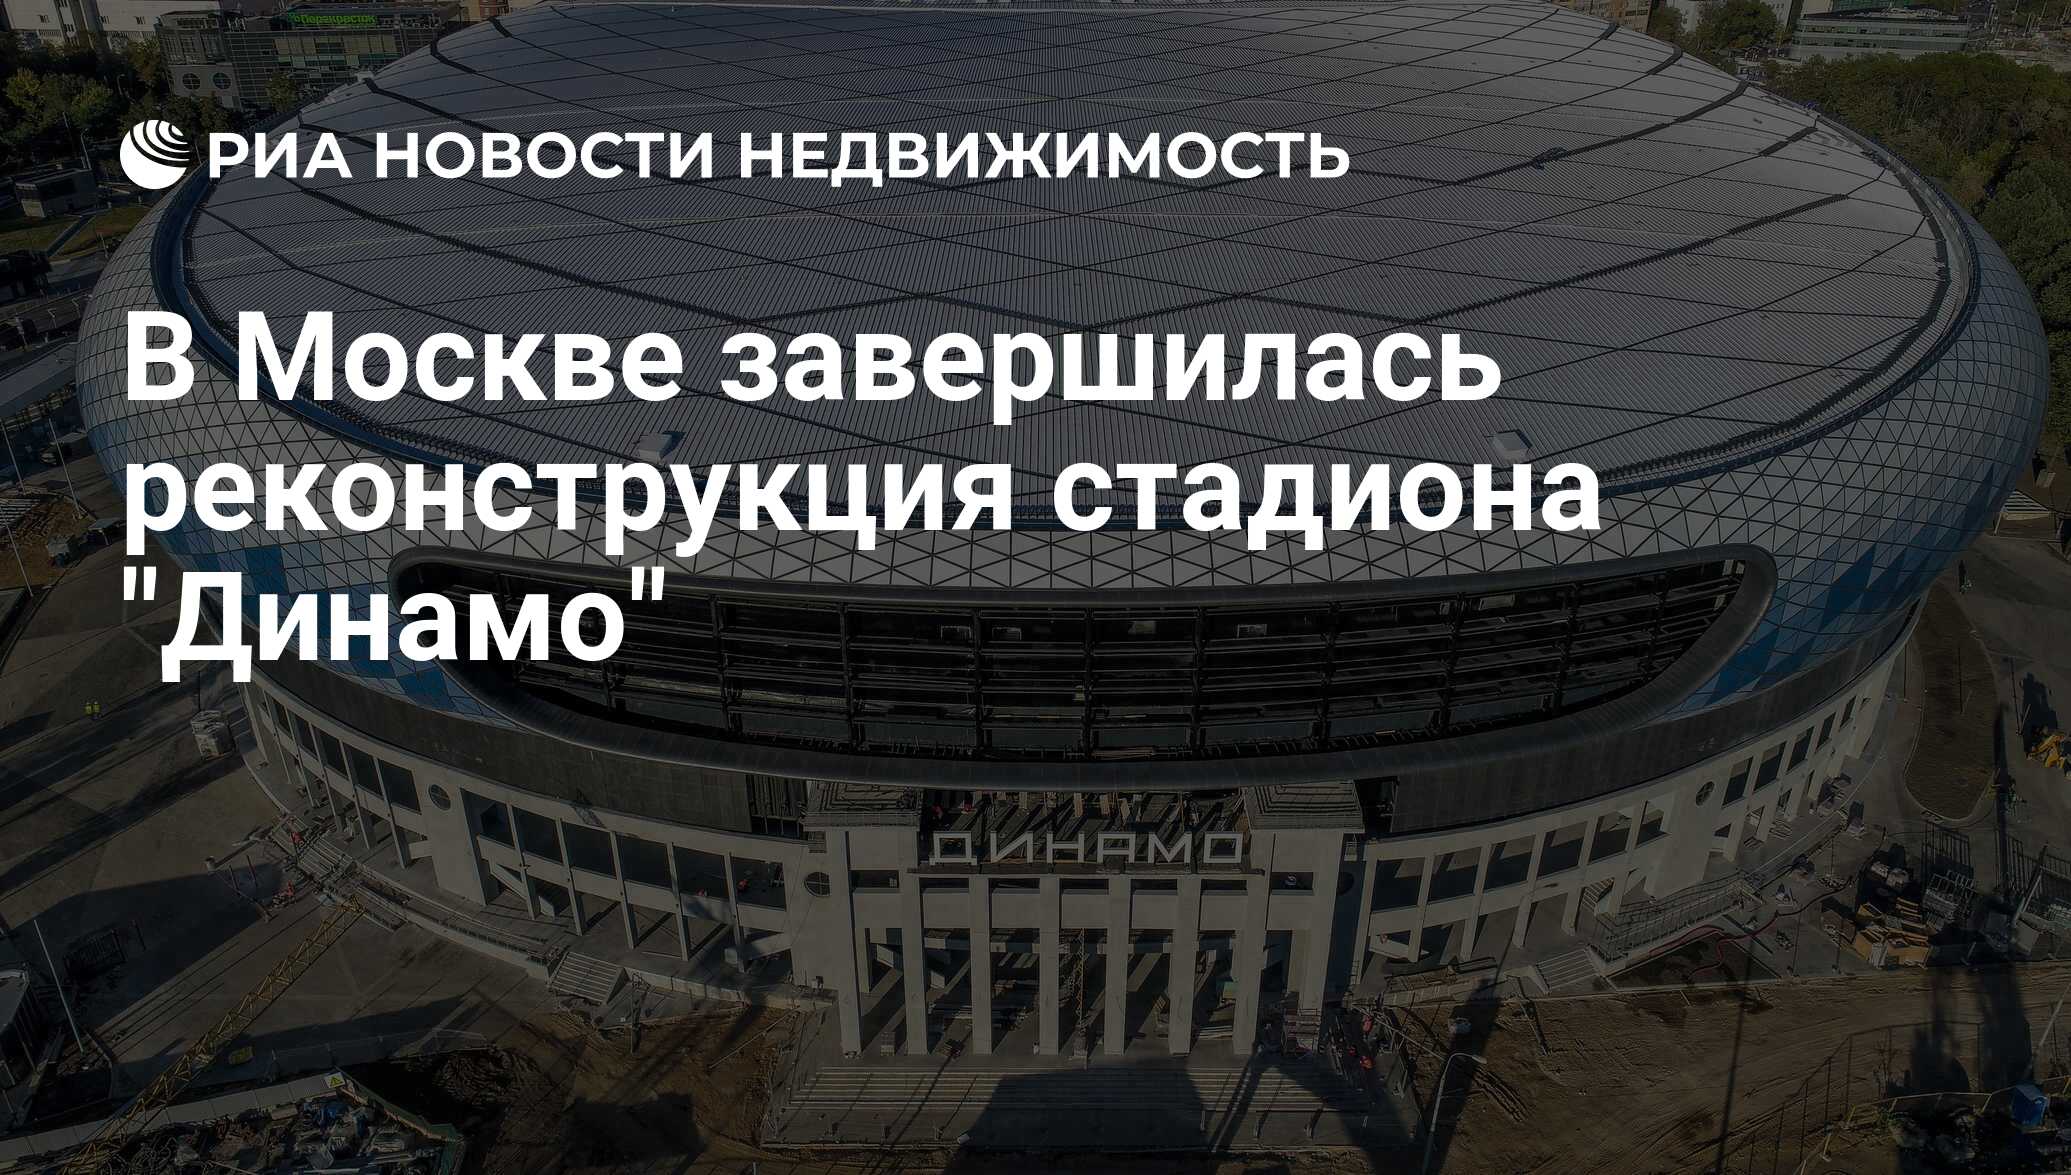 Стадион динамо на карте москвы